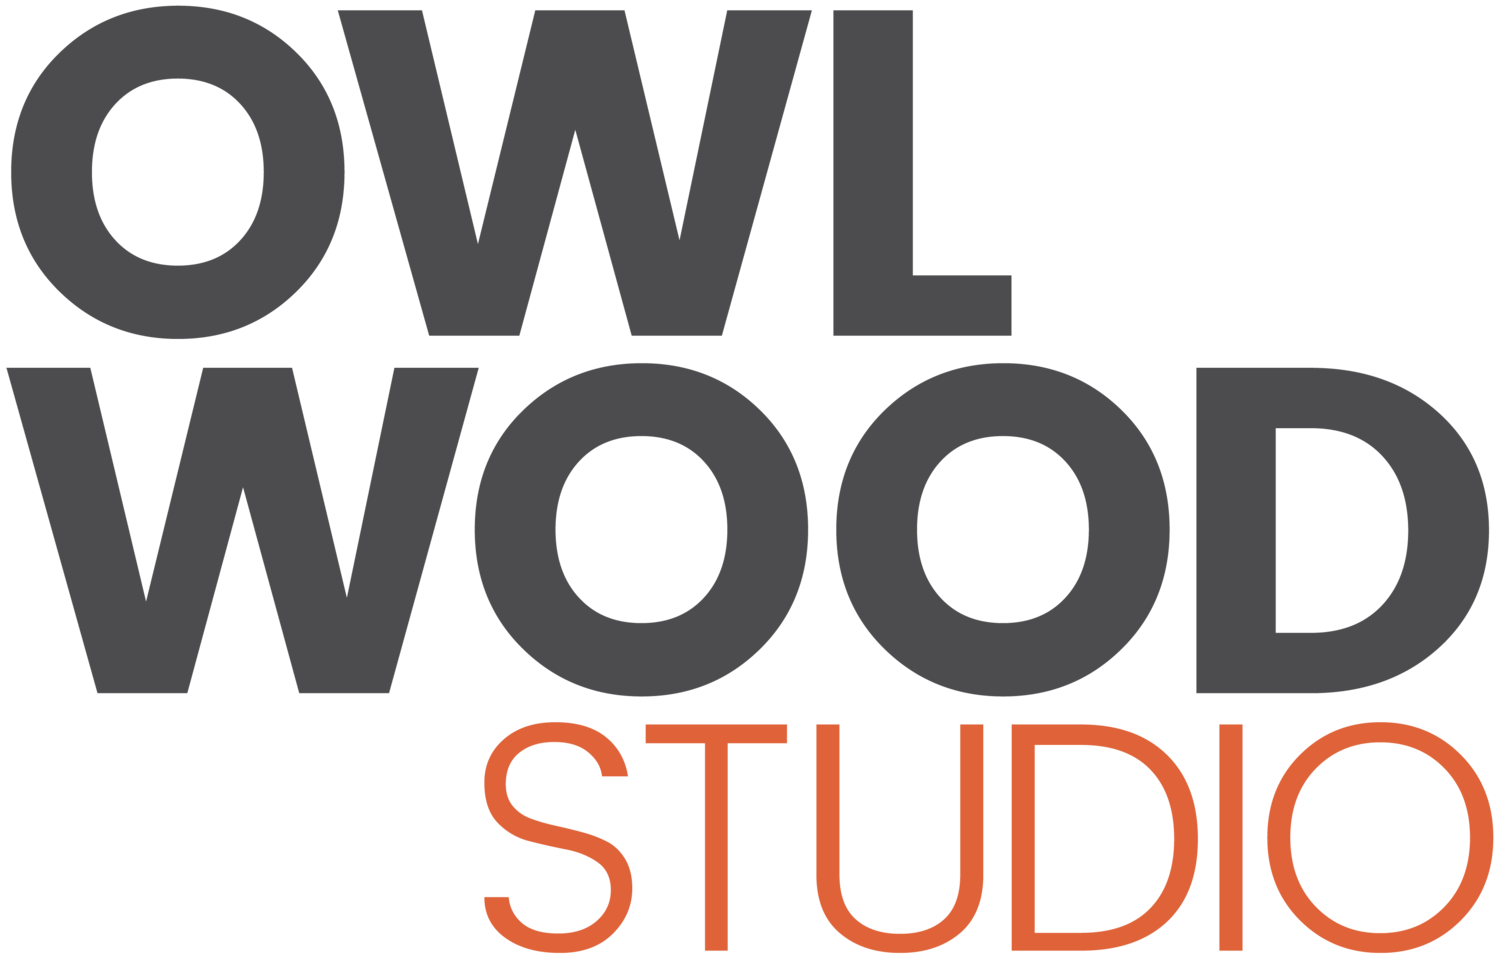 Owl Wood Studio